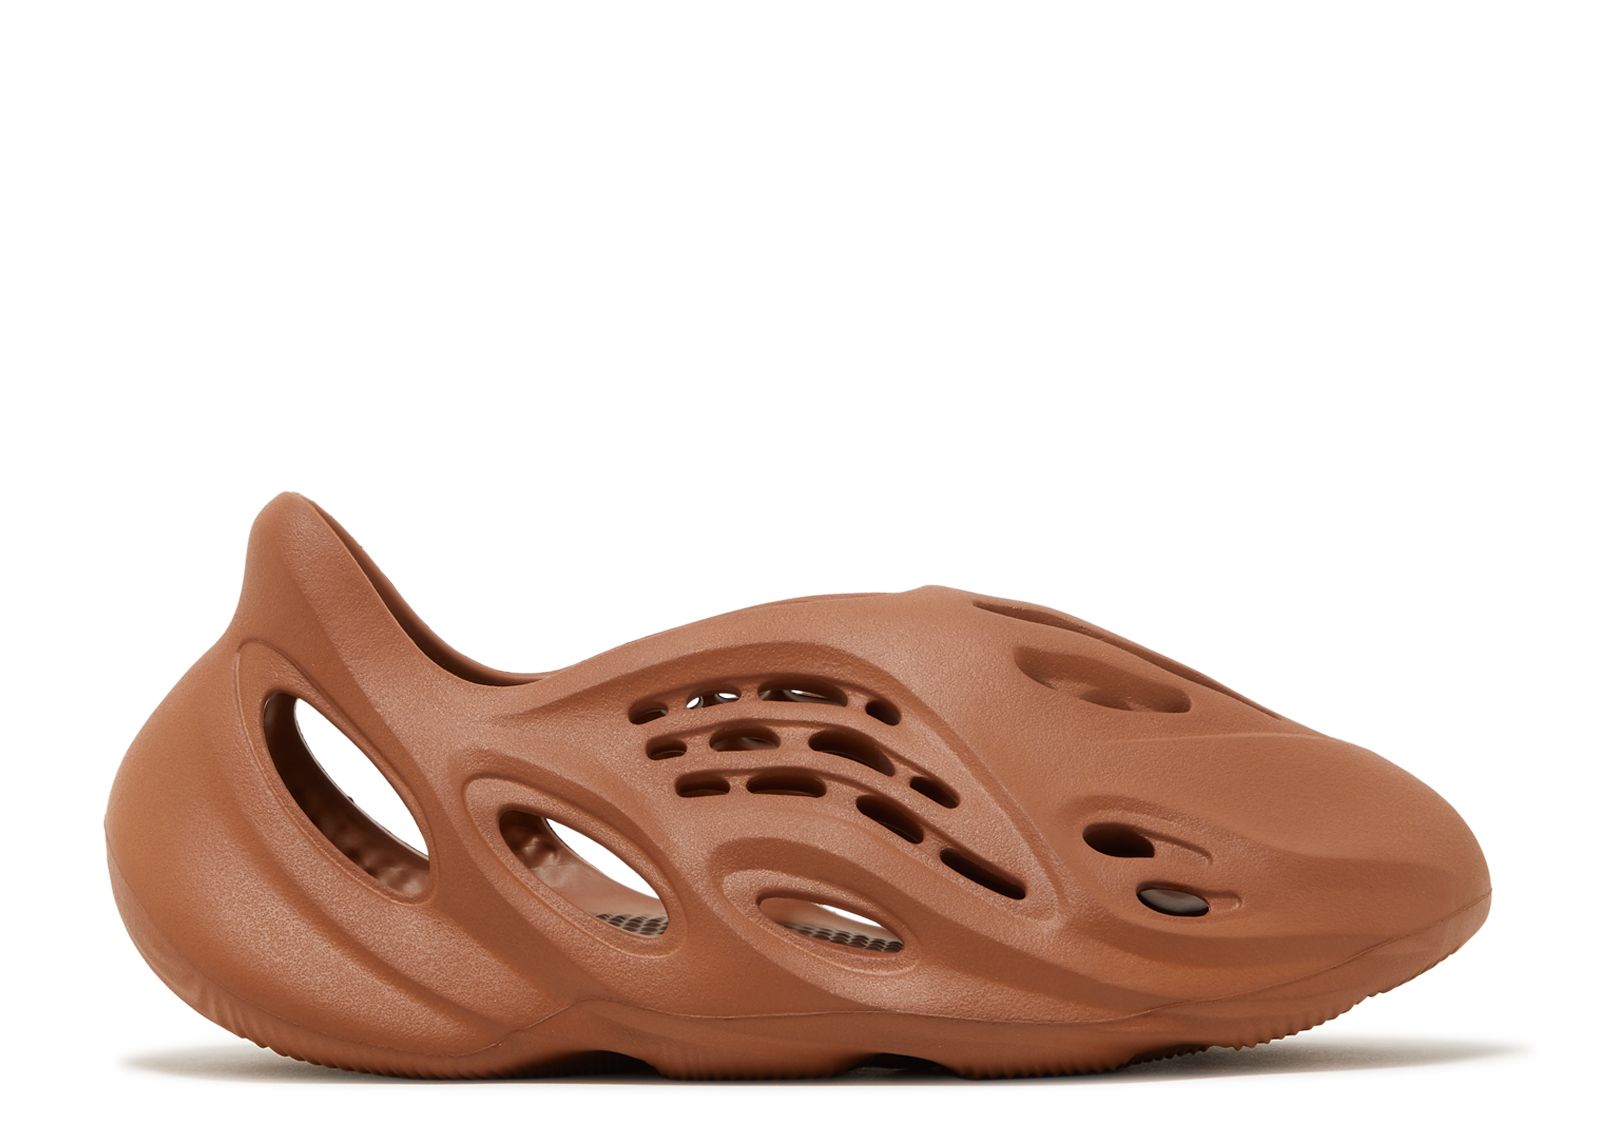 Кроссовки adidas Yeezy Foam Runner 'Clay Red', коричневый цена и фото